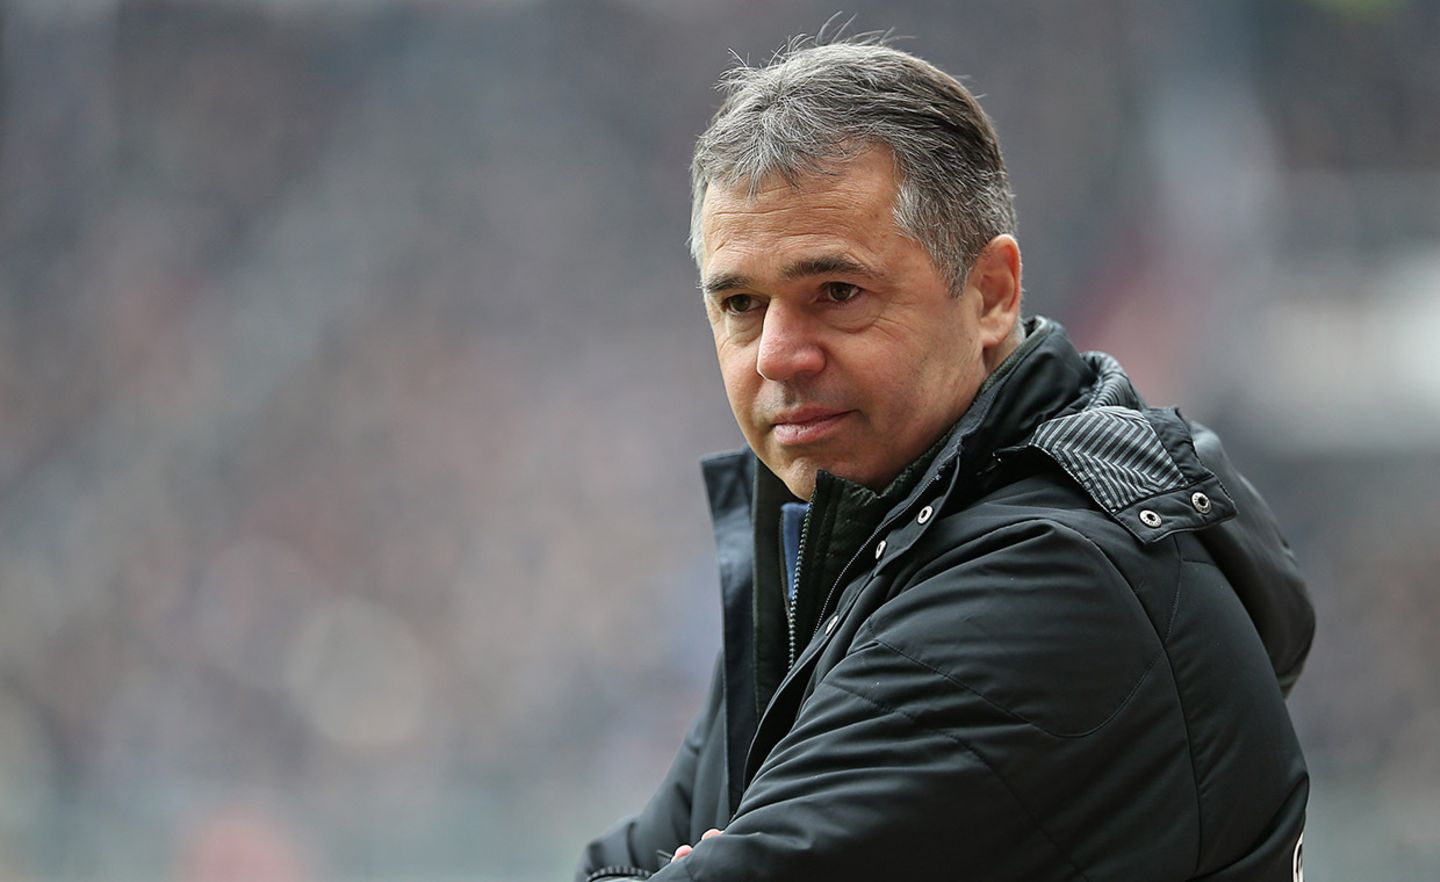 Andreas Rettig war bis September kaufmännischer Geschäftsführer beim FC St. Pauli. In den vergangenen Jahren äußerte er sich immer wieder kritisch über die Entwicklung des Profifußballs – etwa durch den Einfluss branchenfremder Investoren